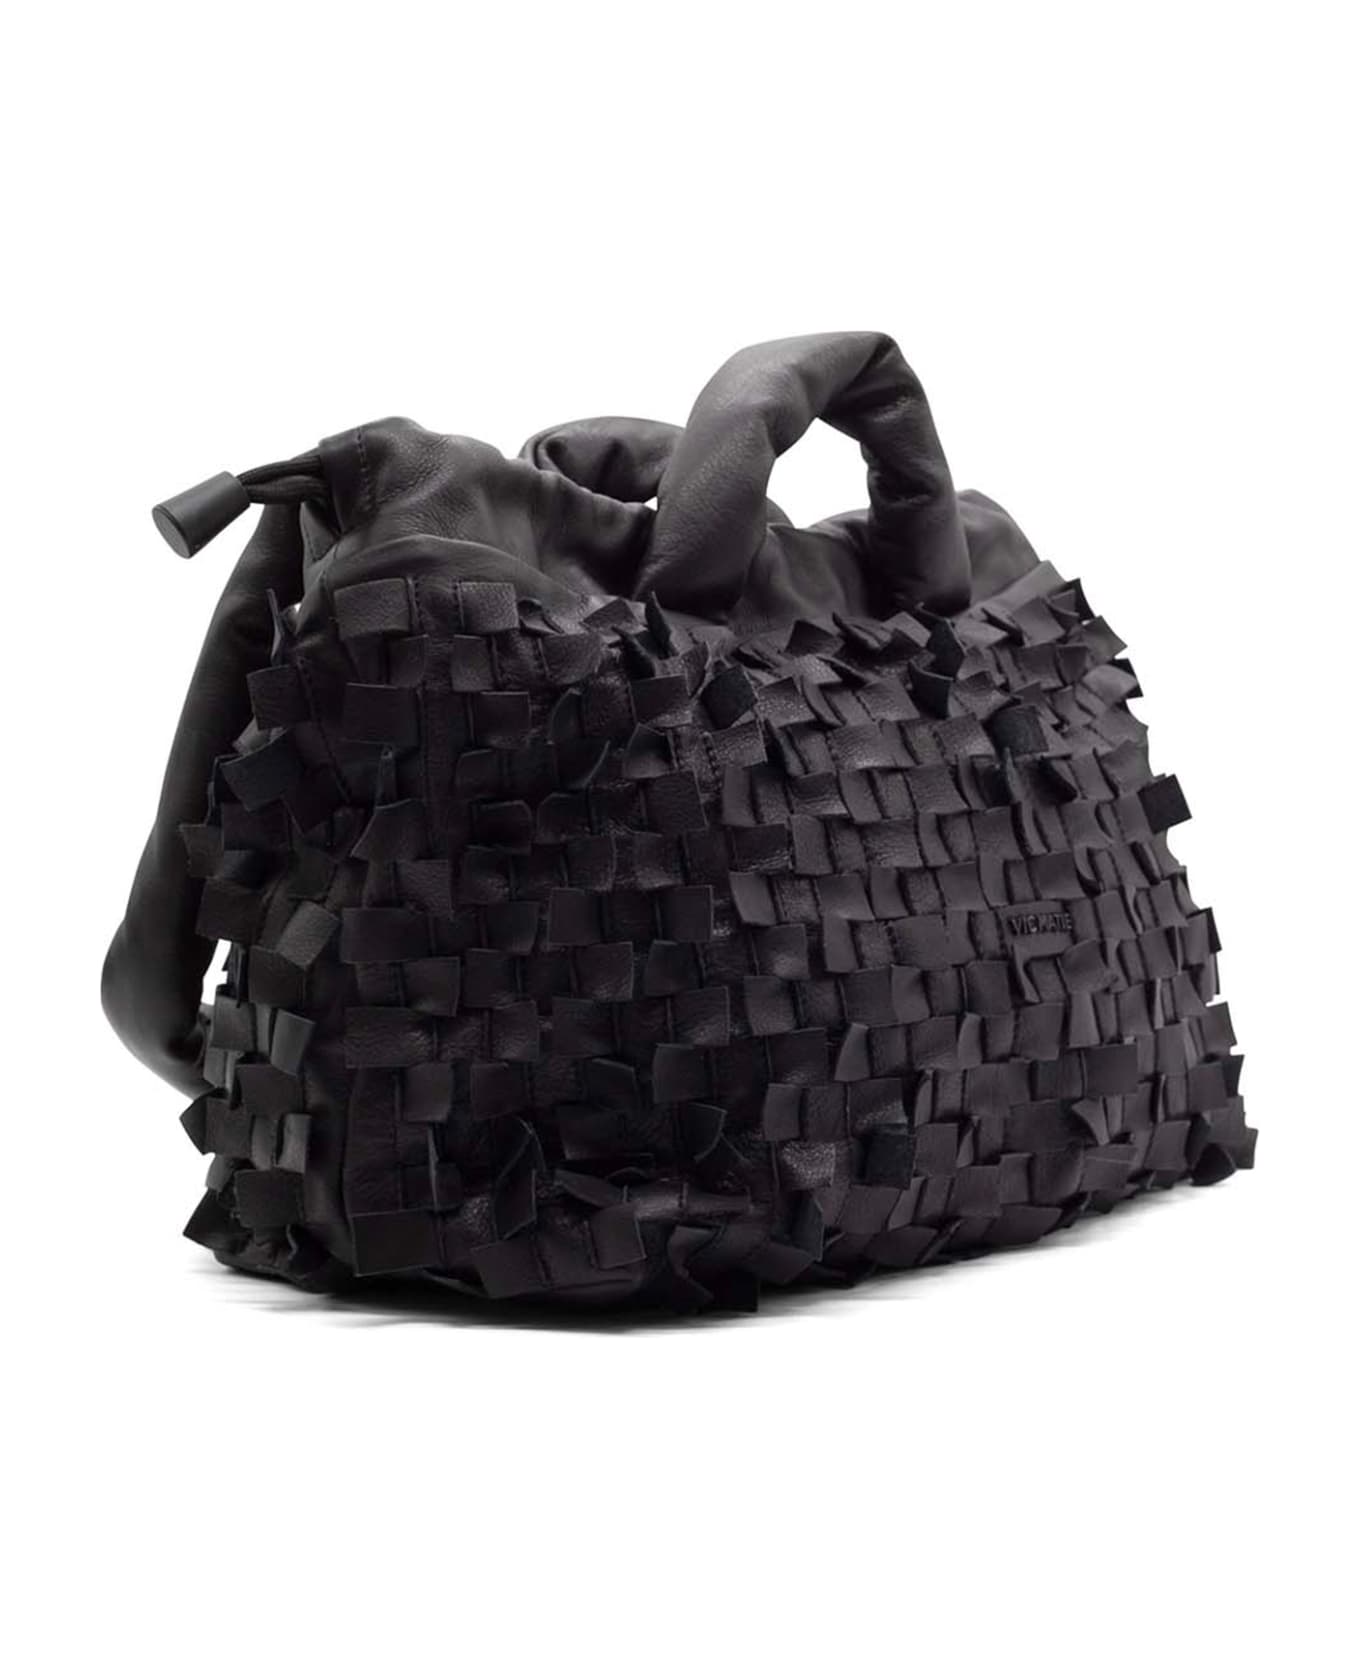 Vic Matié Black Leather Handbag With Shoulder Strap - BLACK